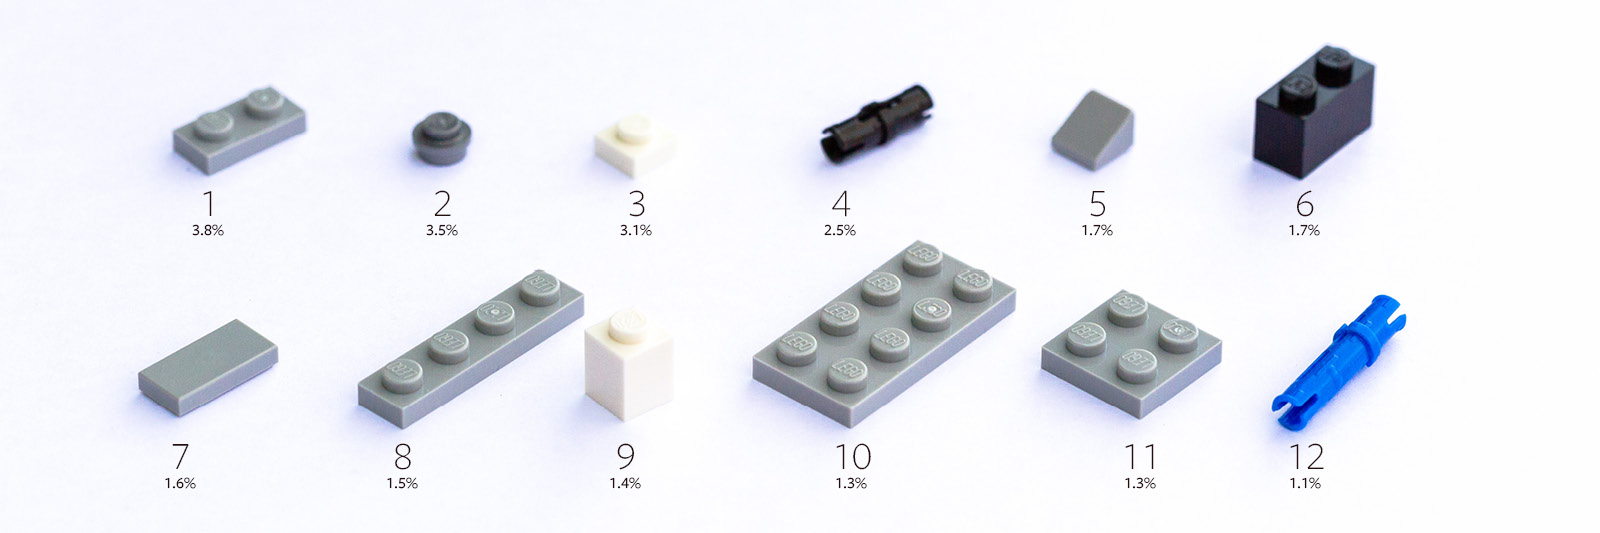 No 3023 Dark Bluish Gray Plate 1 x 2 LEGO Parts QTY 15 